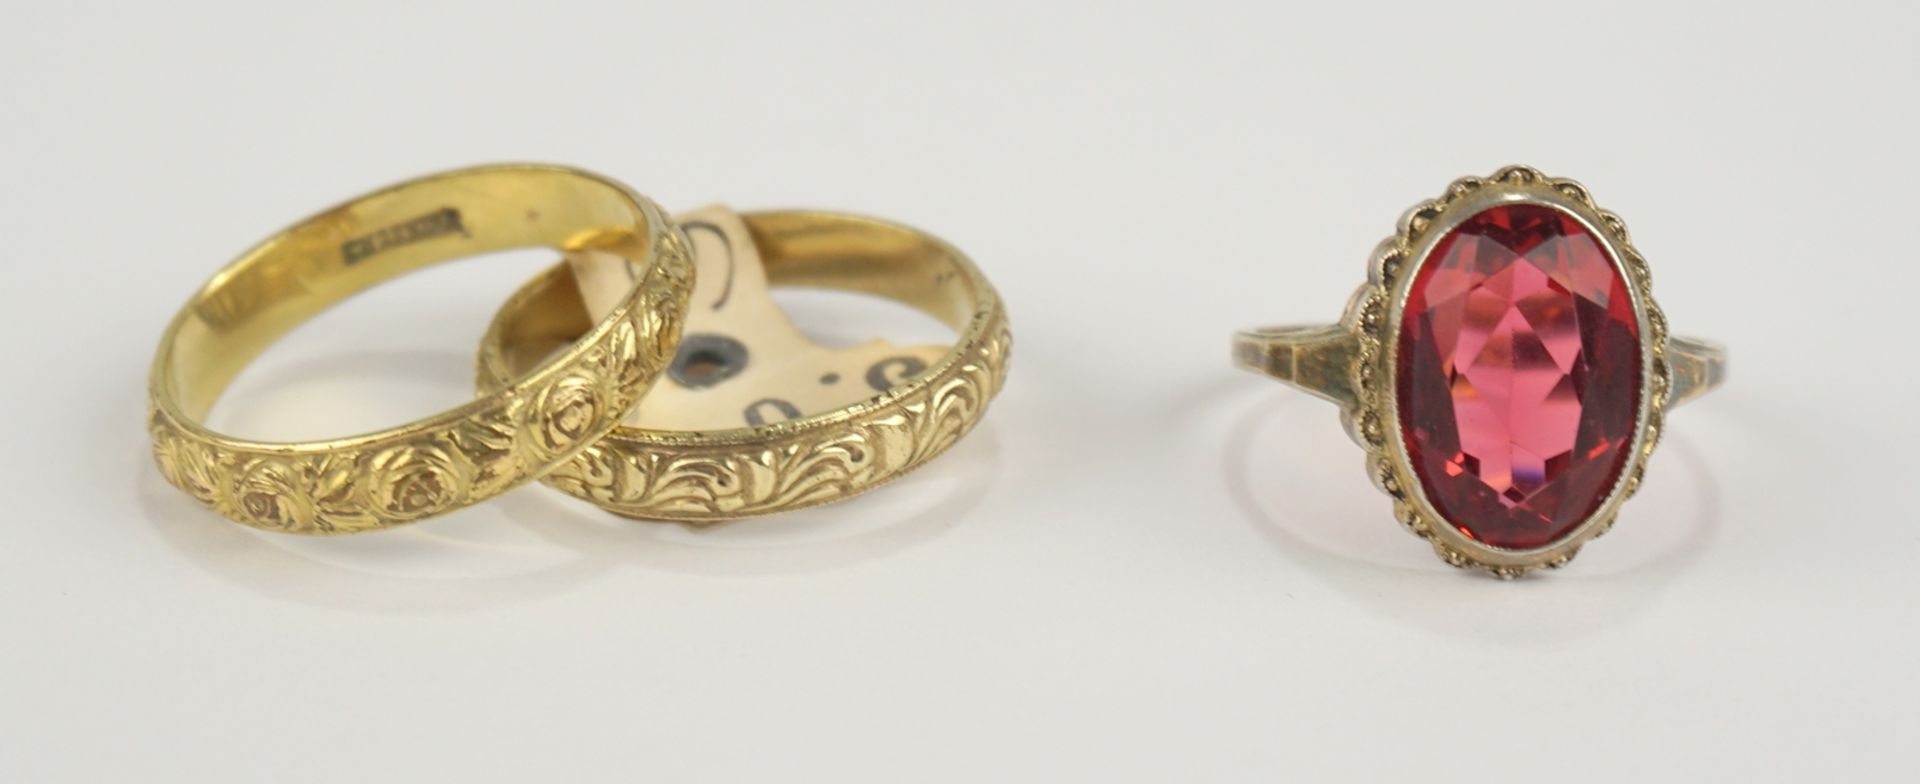 3 Ringe, Charnier, vergoldet, 1930er Jahre